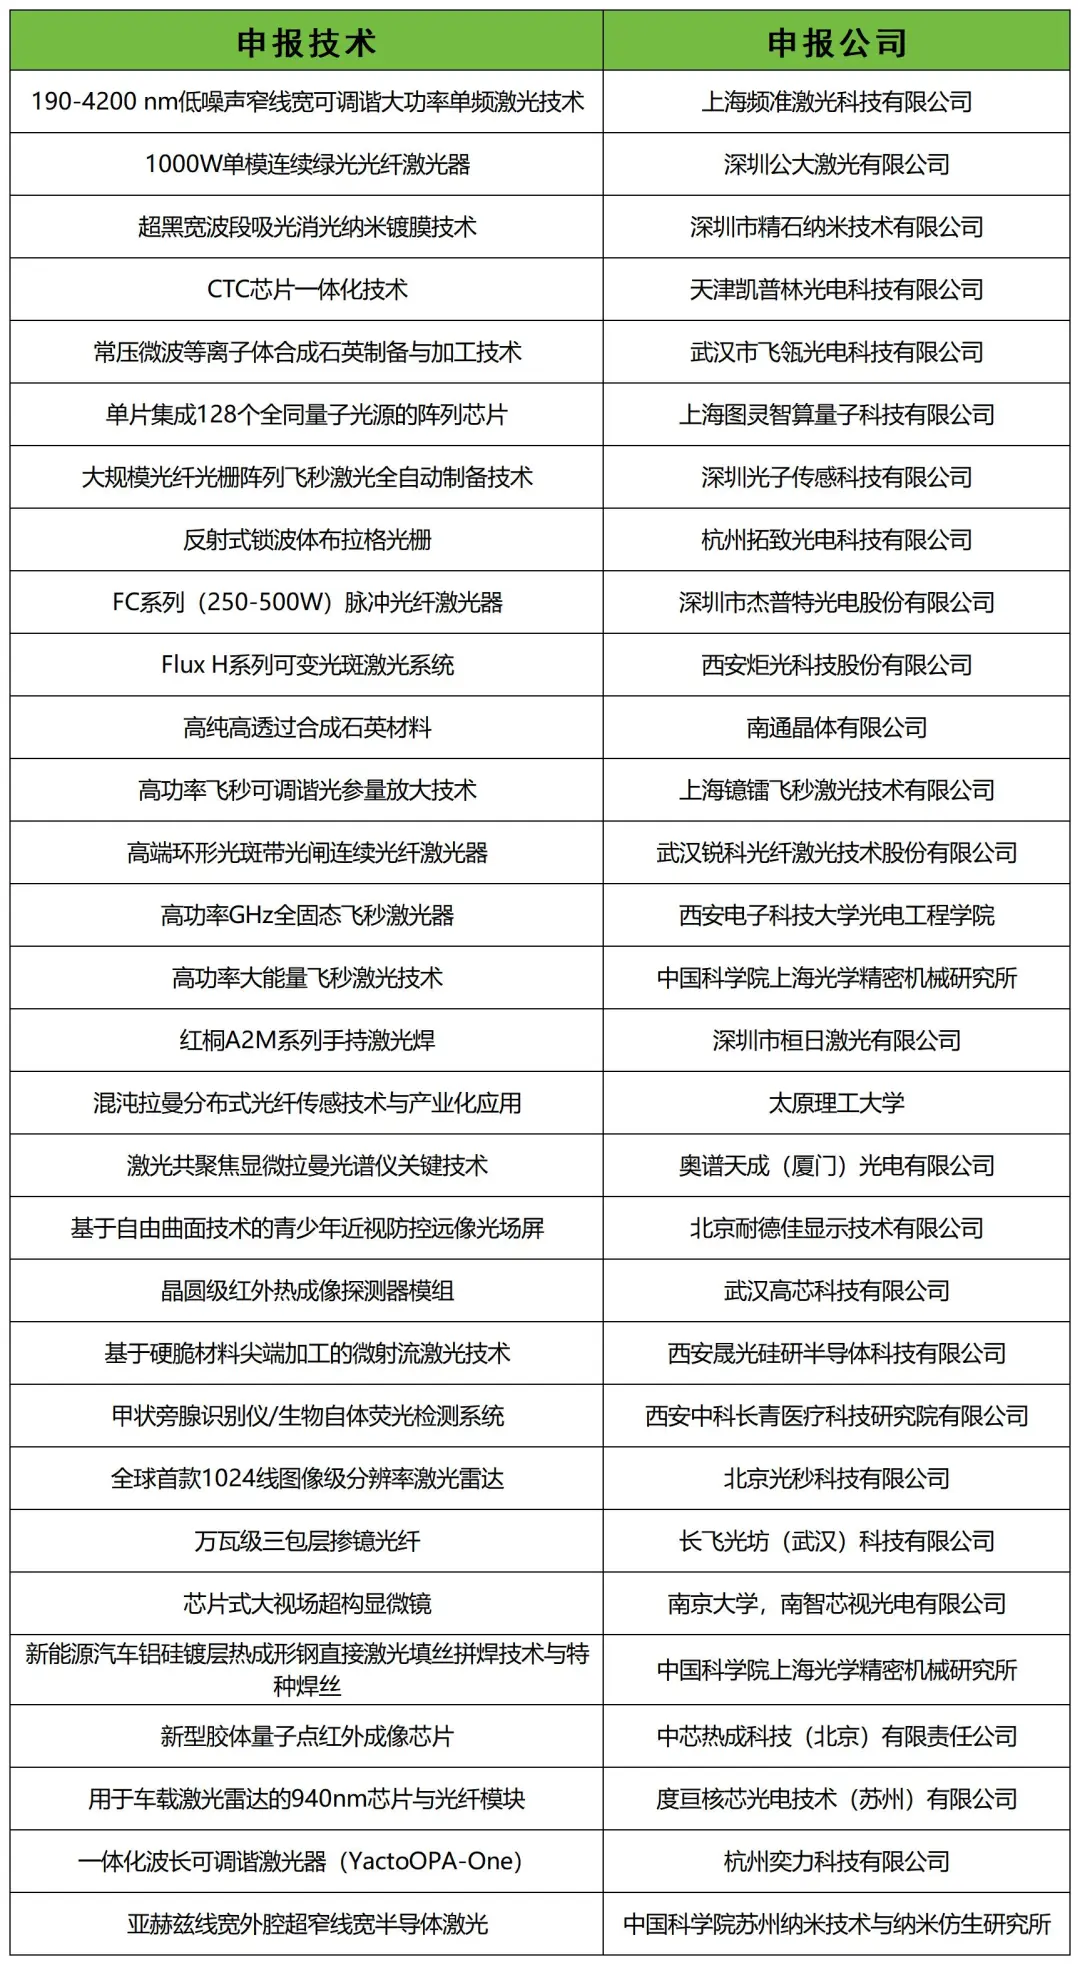 “2023年度中国十大光学产业技术”颁奖典礼暨产业创新大会